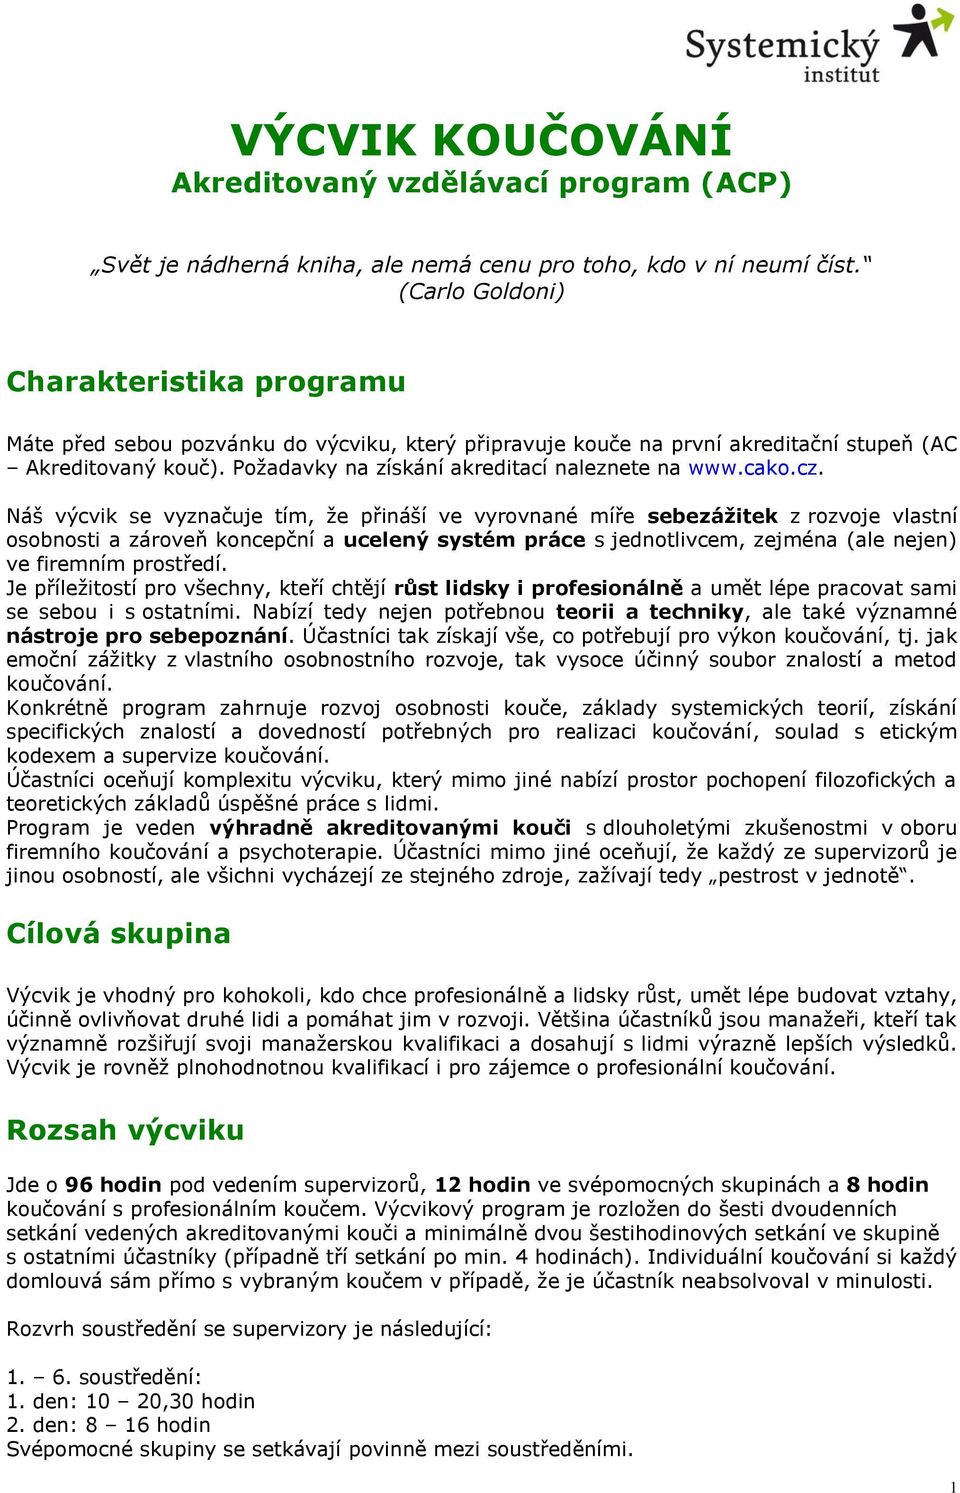 Požadavky na získání akreditací naleznete na www.cako.cz.